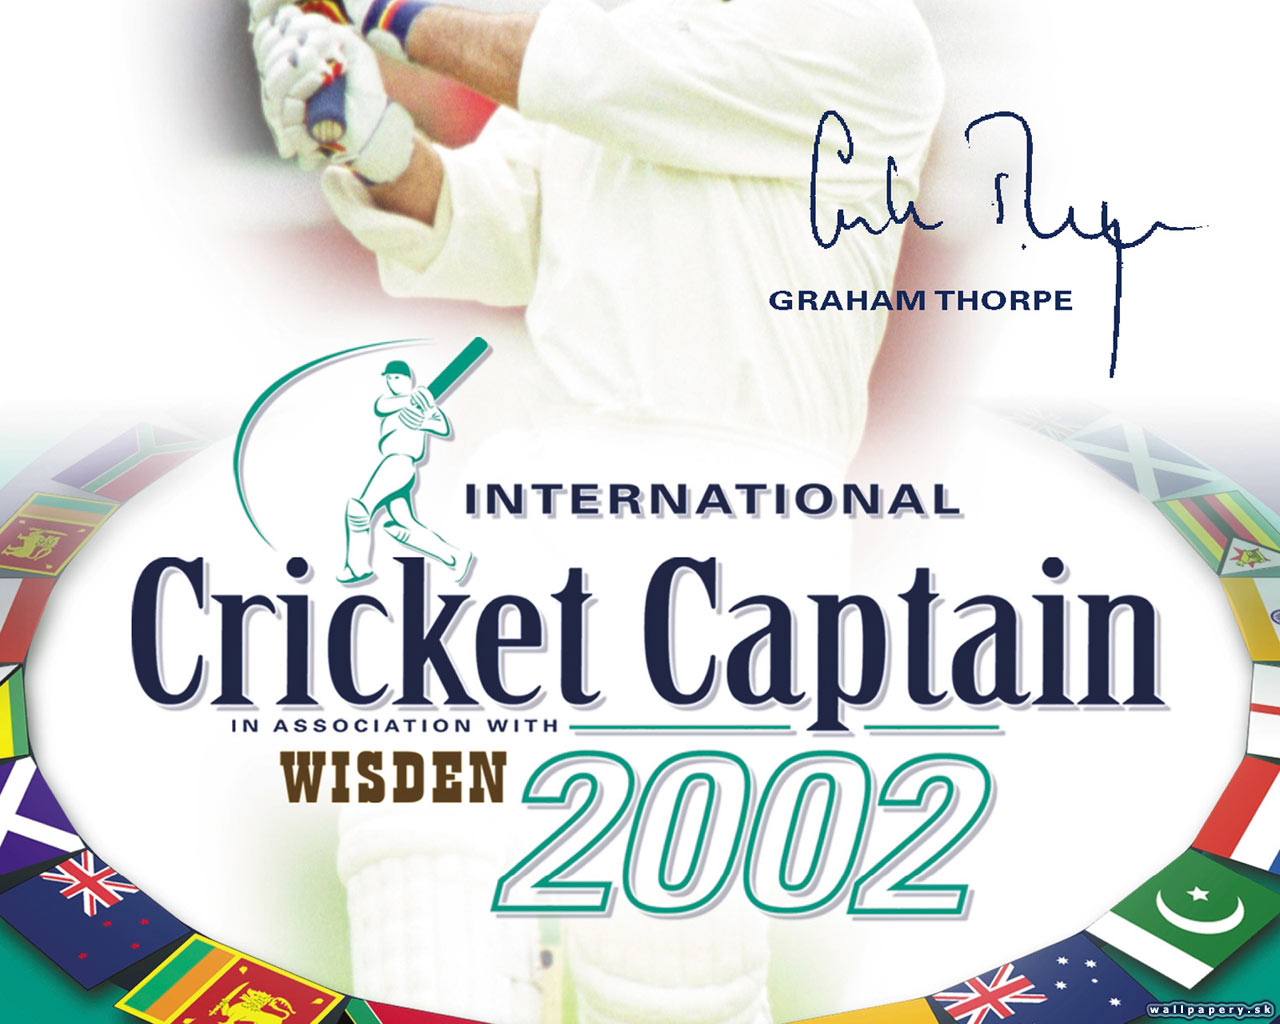 International Cricket Captain 2002 - wallpaper 3